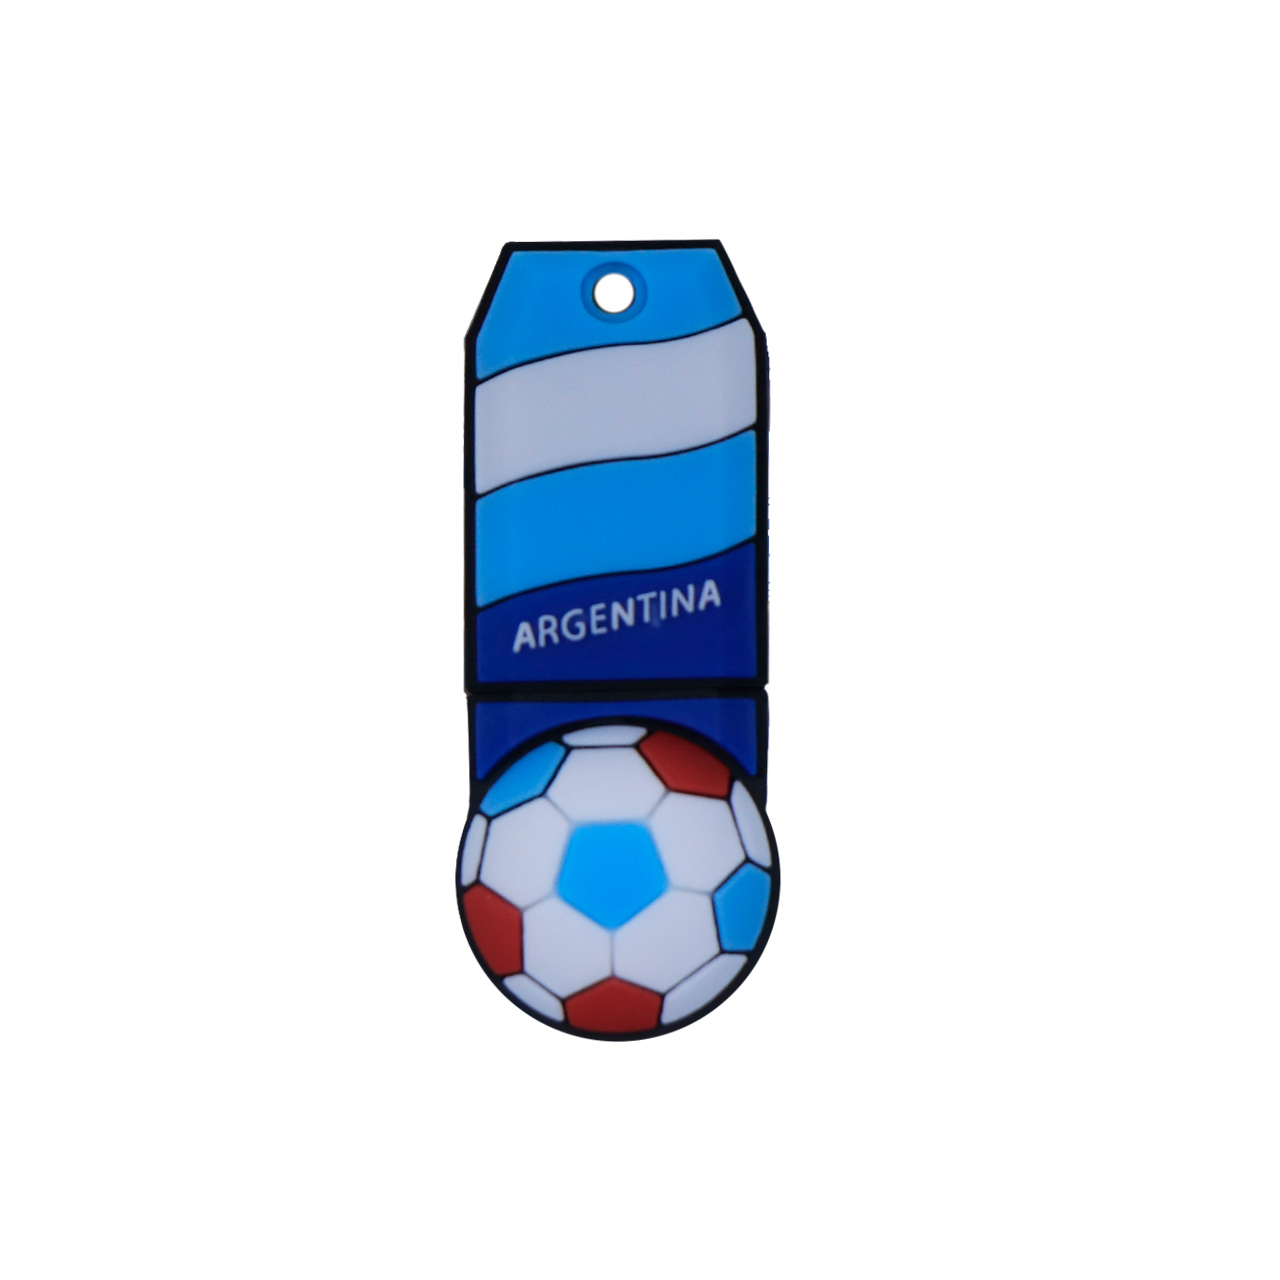 فلش مموری دایا دیتا طرح Argentina Flag مدل PS1011-USB3 ظرفیت 64 گیگابایت